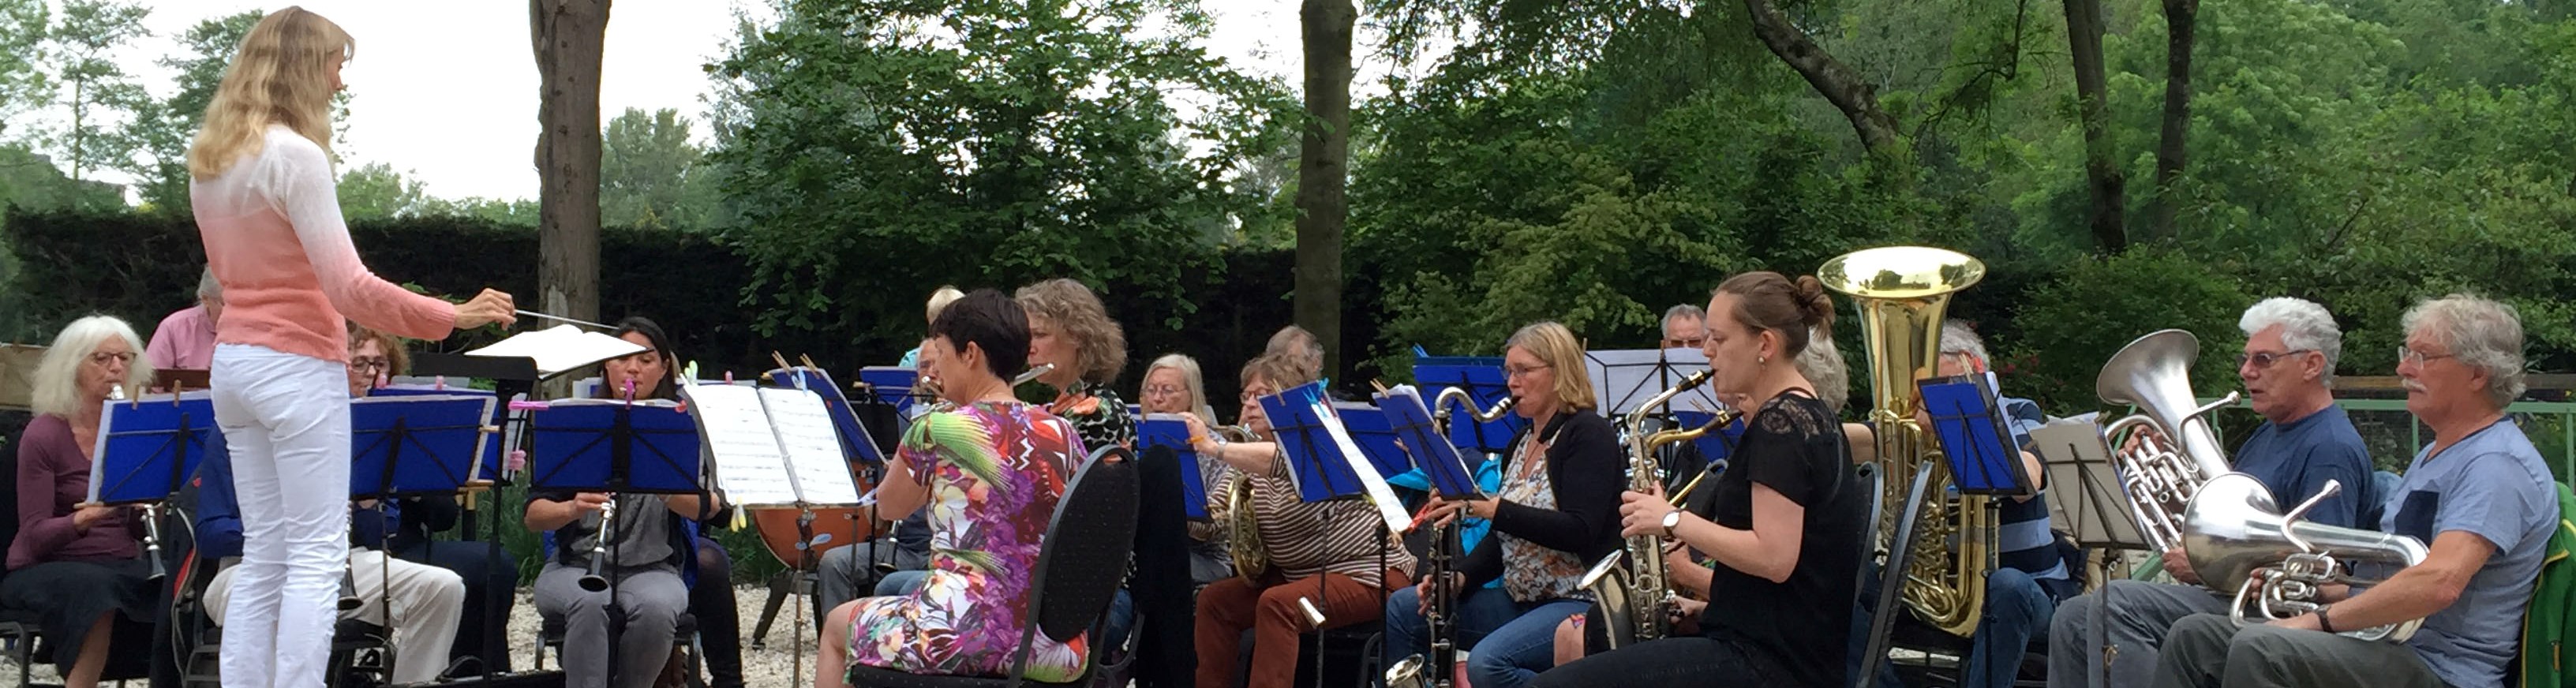 Hoogzomer Muziekfeest In De Tuinen Van Westerpark